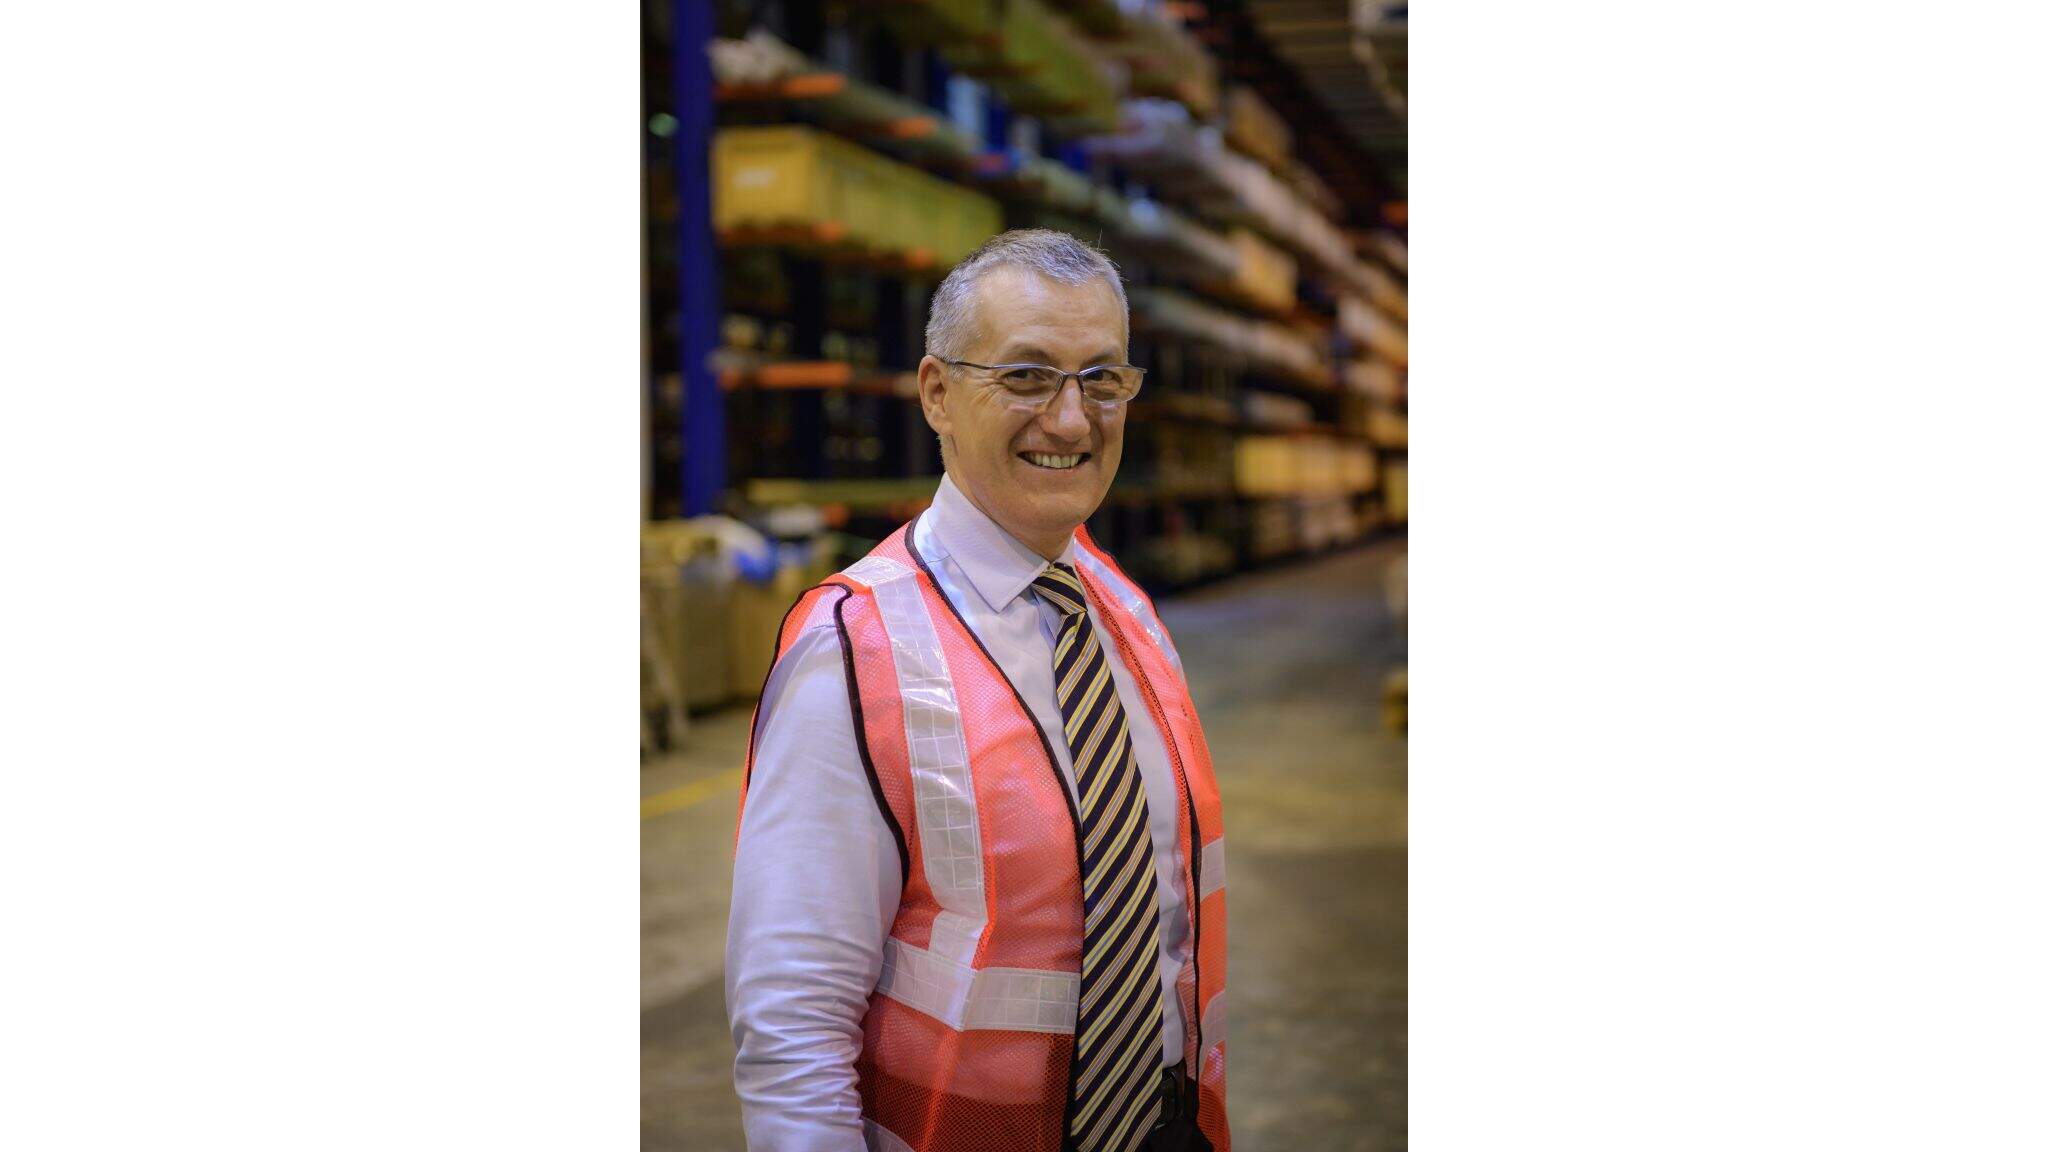 Frank Stadus, Managing Director Air & Sea Logistics Singapore